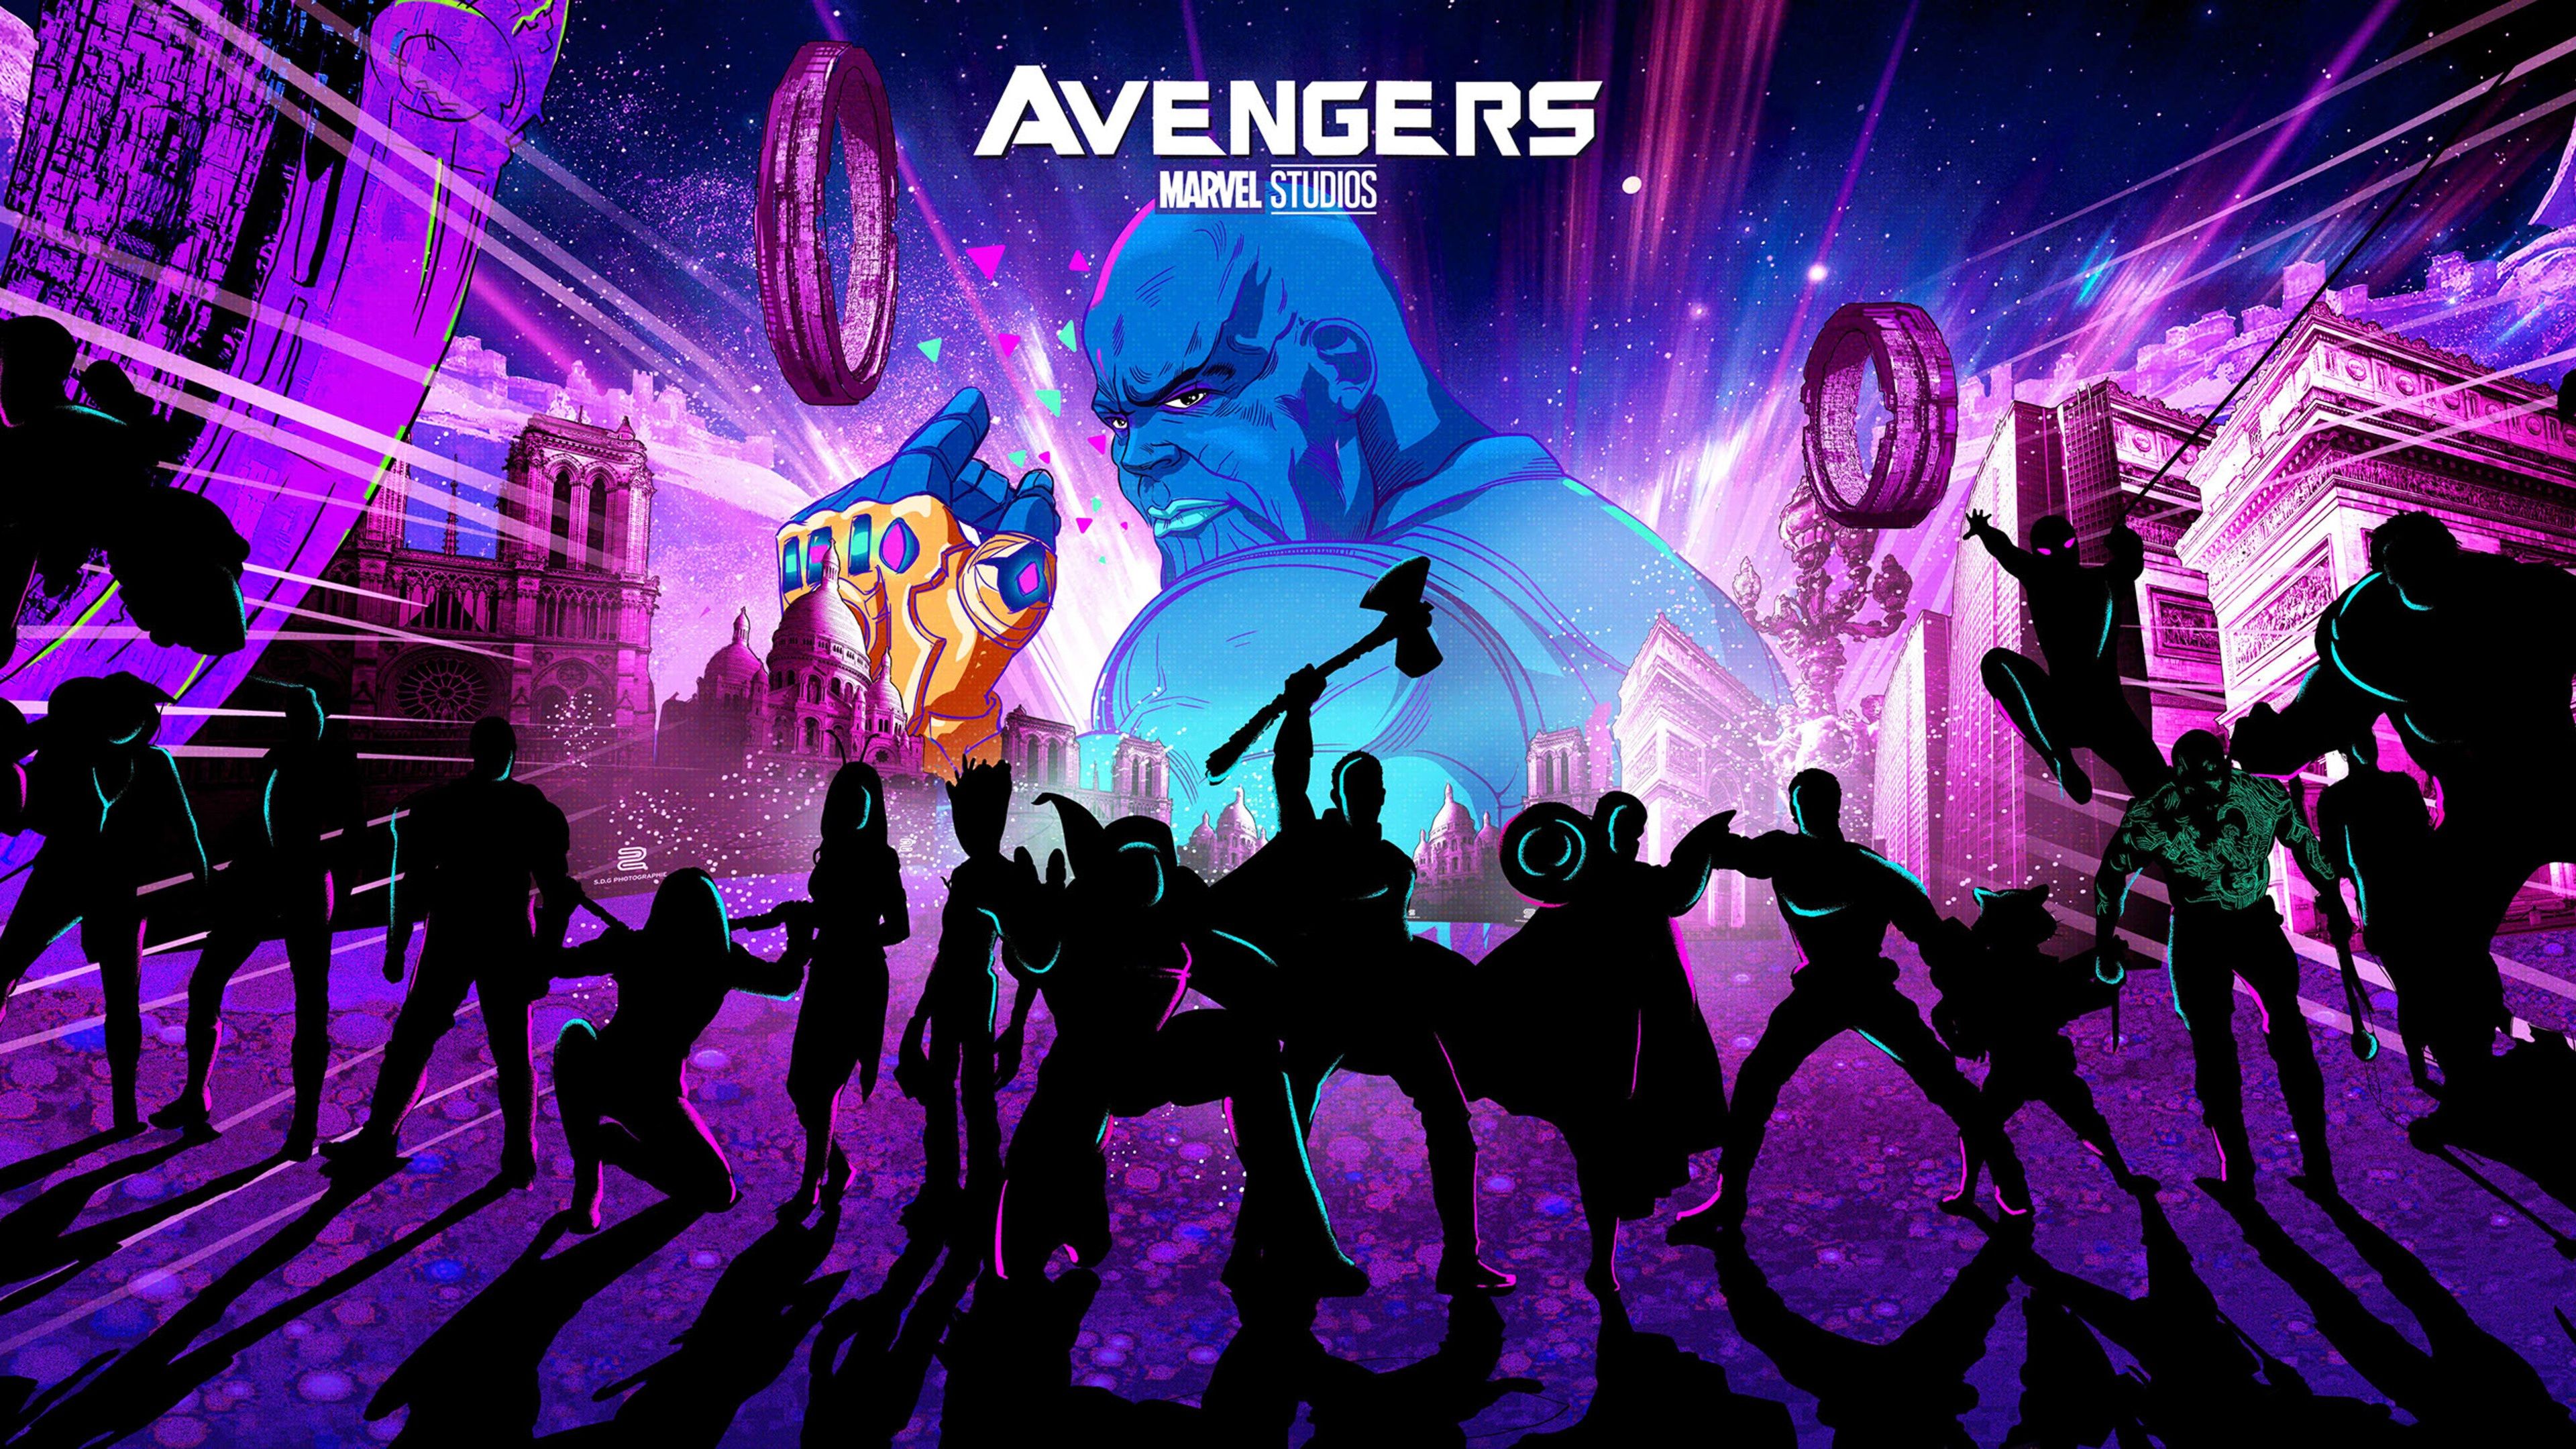 Avengers Endgame 2019 Retro Artwork 4K 3840x2160 Ultra HD Wallpaper